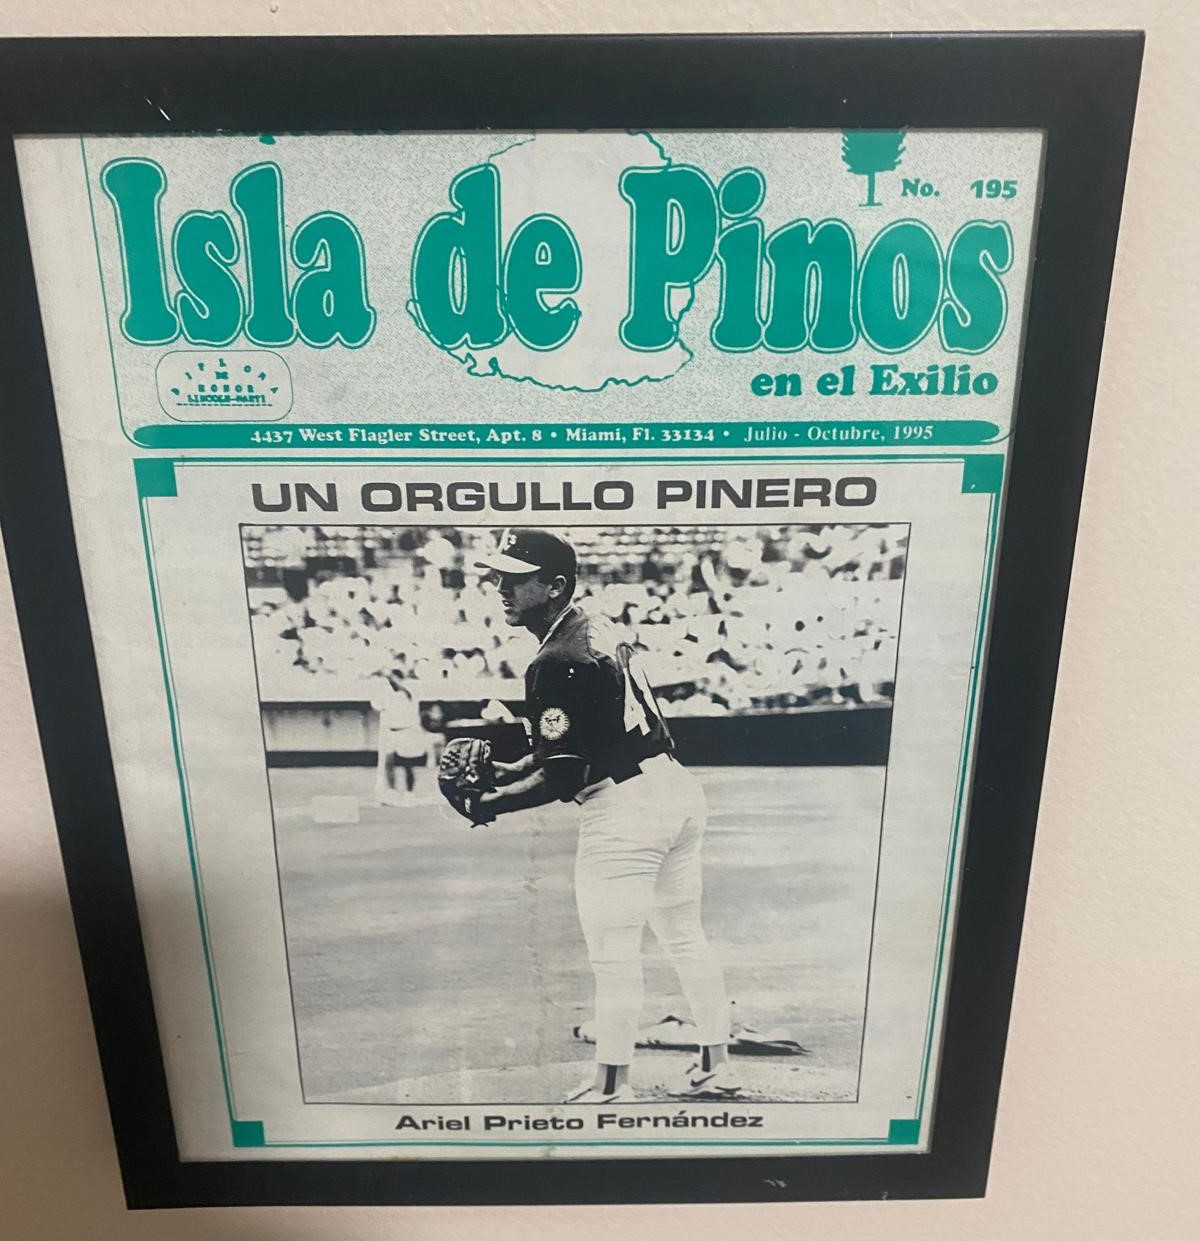 El pitcher, que llegó a marcar 100 mph en la Isla y 97 en Grandes Ligas, también considera que los peloteros cubanos de MLB no deberían representar al equipo Cuba. “Si se está de este lado seguramente es por alguna razón”.